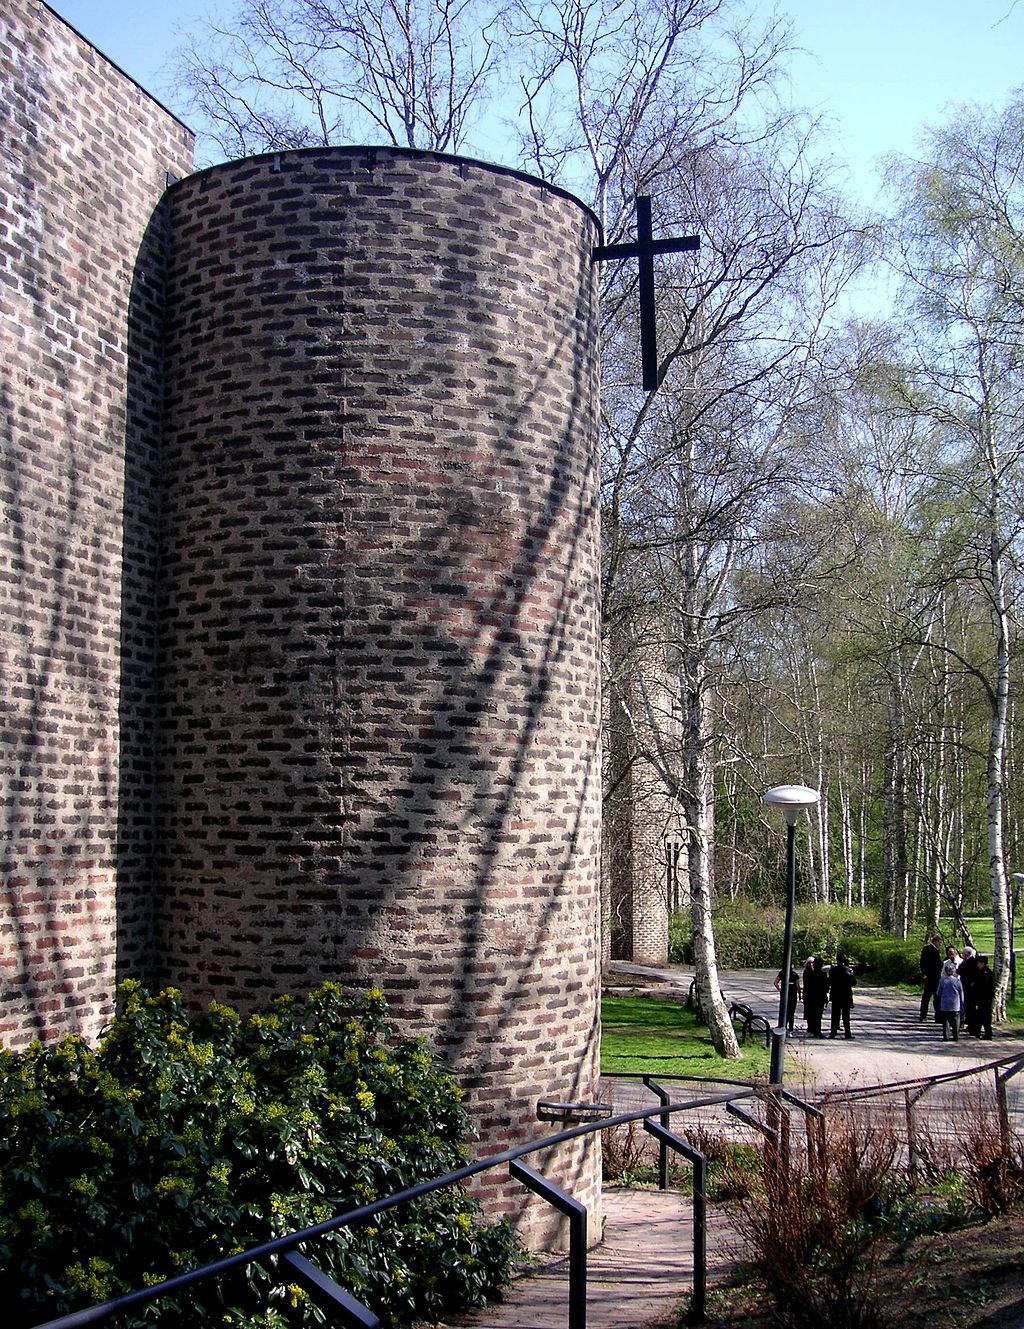 Ett fönsterlöst cylindriskt torn i brunt tegel ungefär 7 meter högt och ett kors som är fäst i tornets sida med ena armen. Träden i närheten kastar skuggor över fasaden.